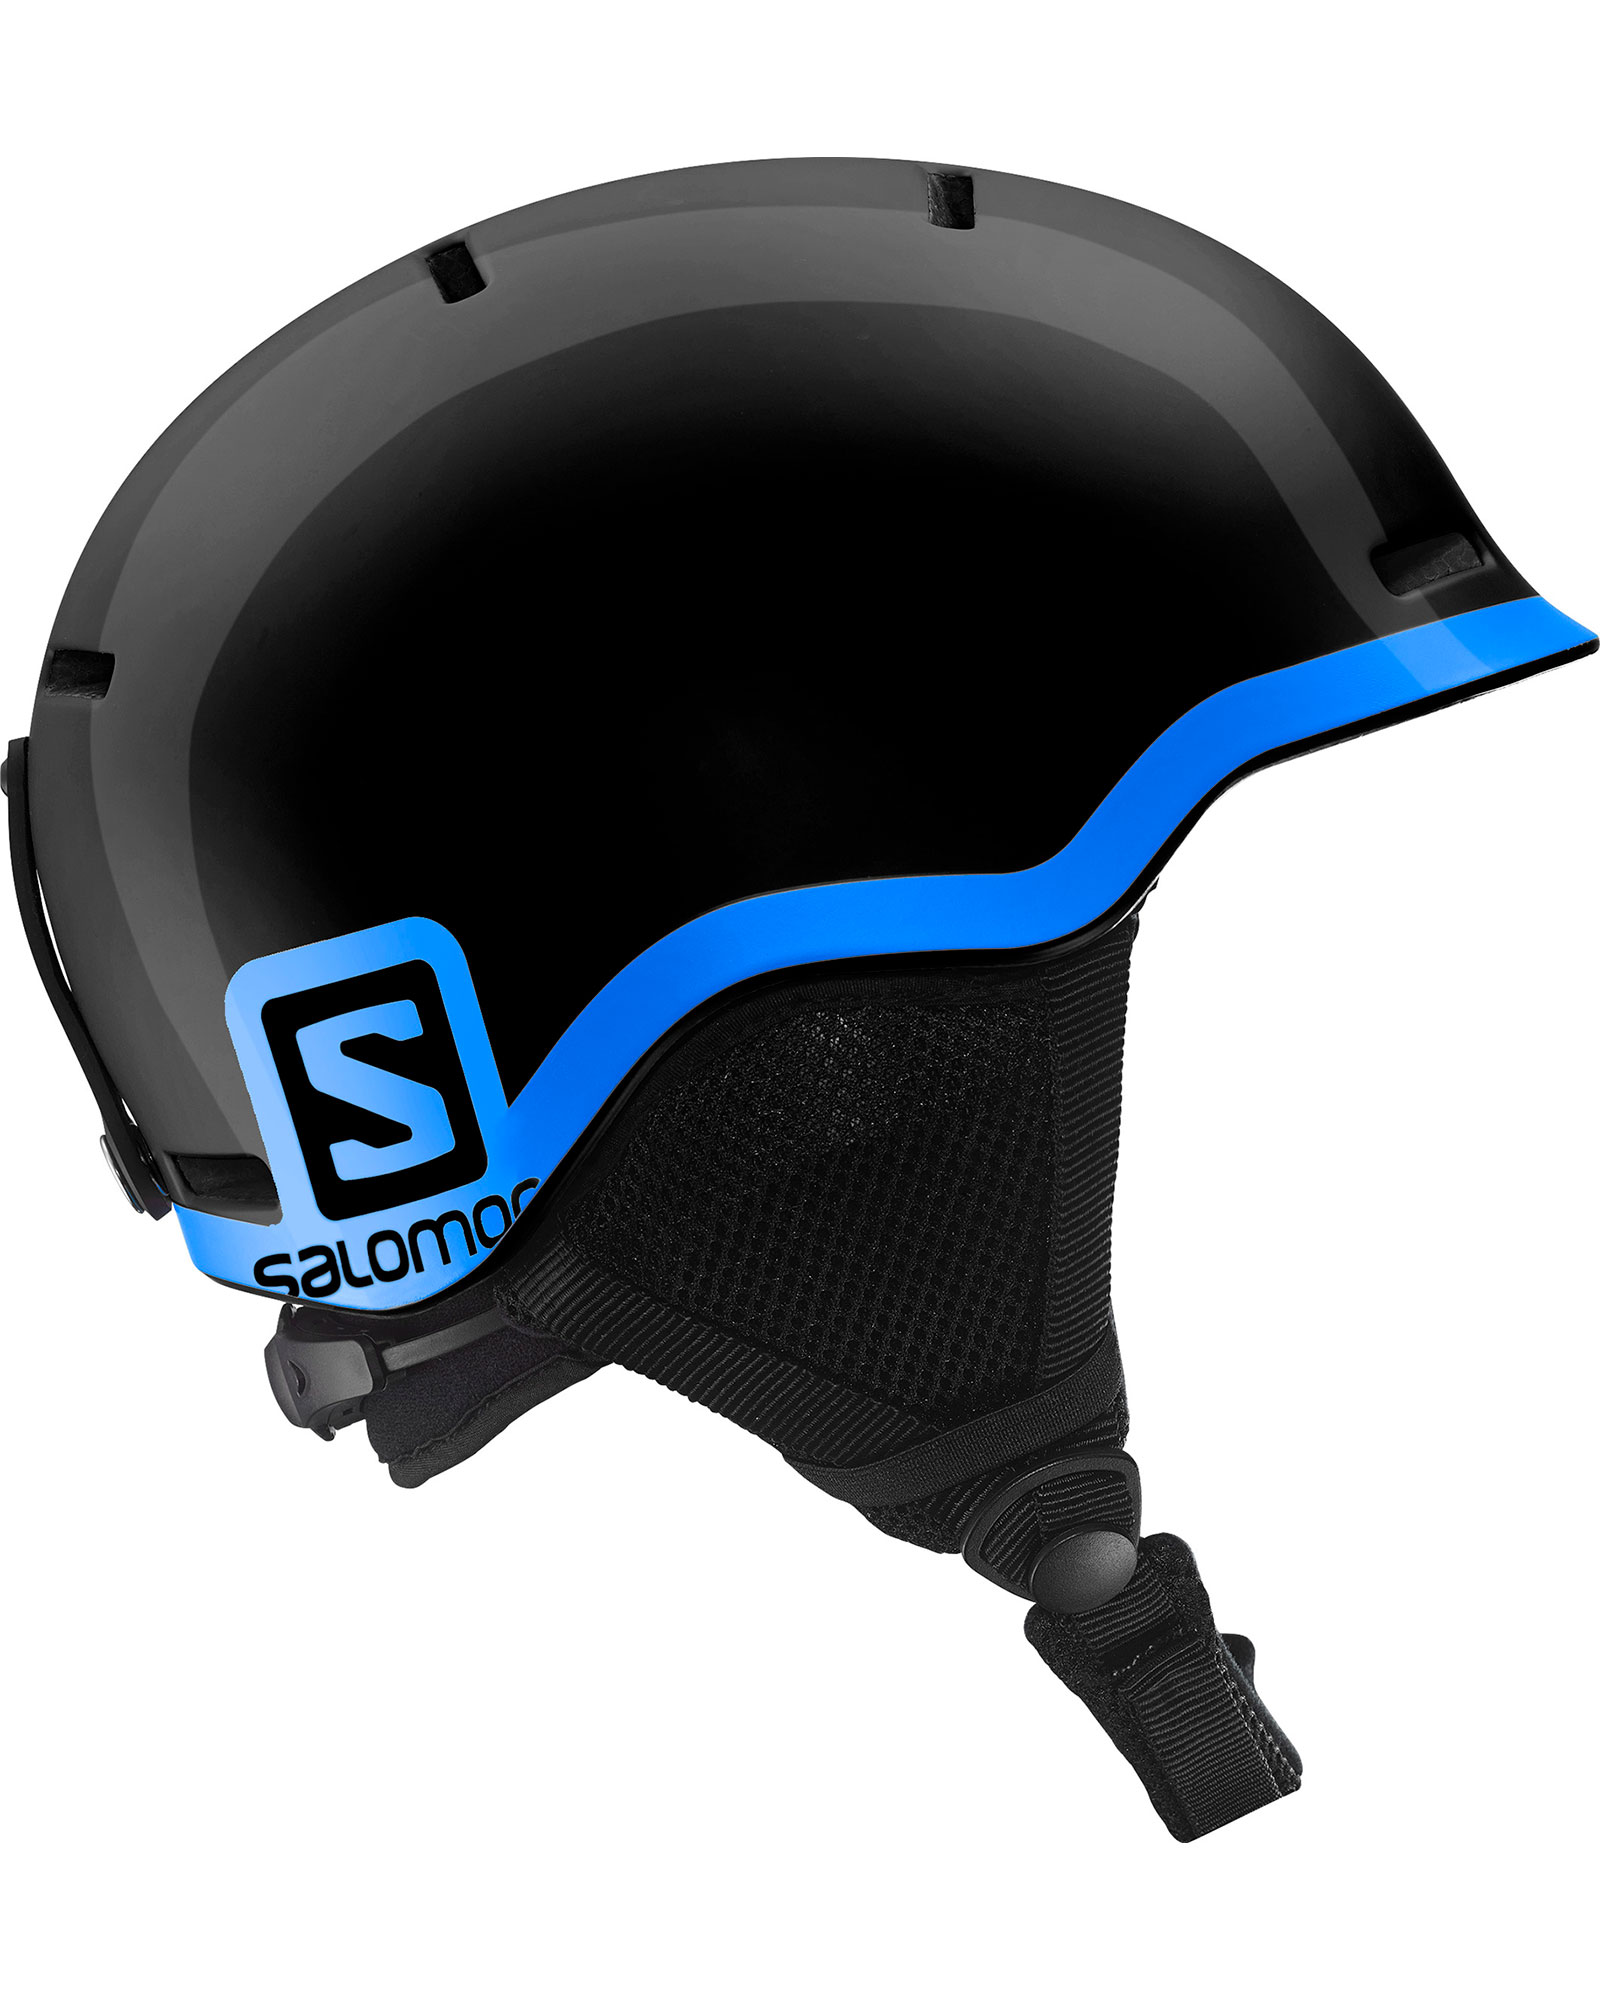 Salomon Grom Youth Helmet - Black/Blue S